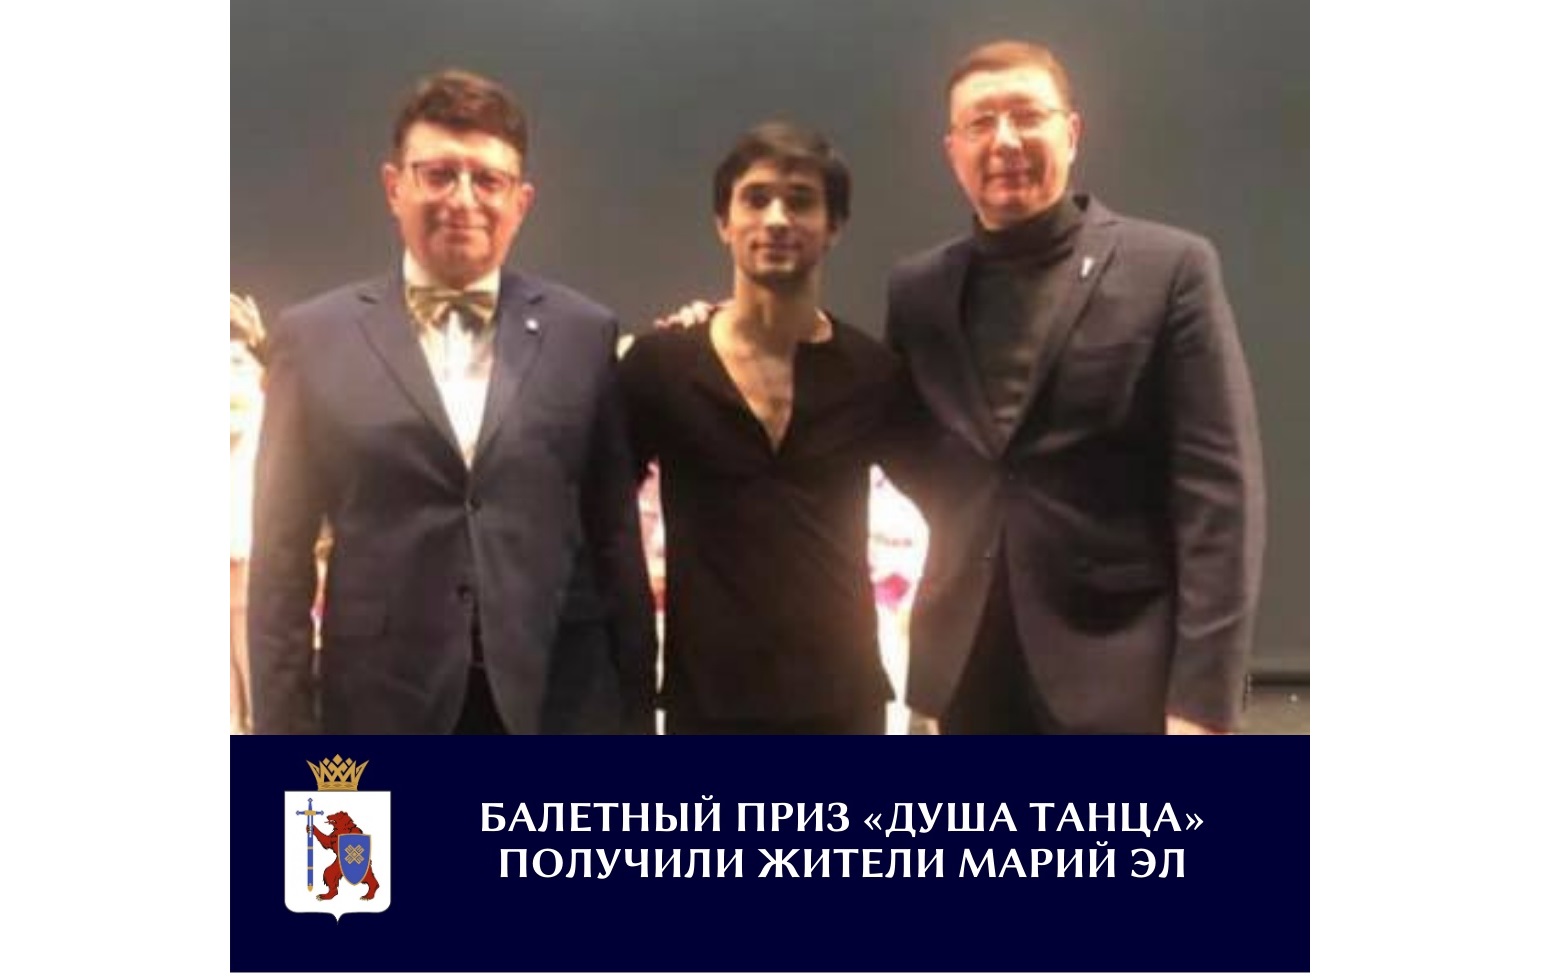 Танцор из Марий Эл стал «Восходящей звездой» в балетной номинации